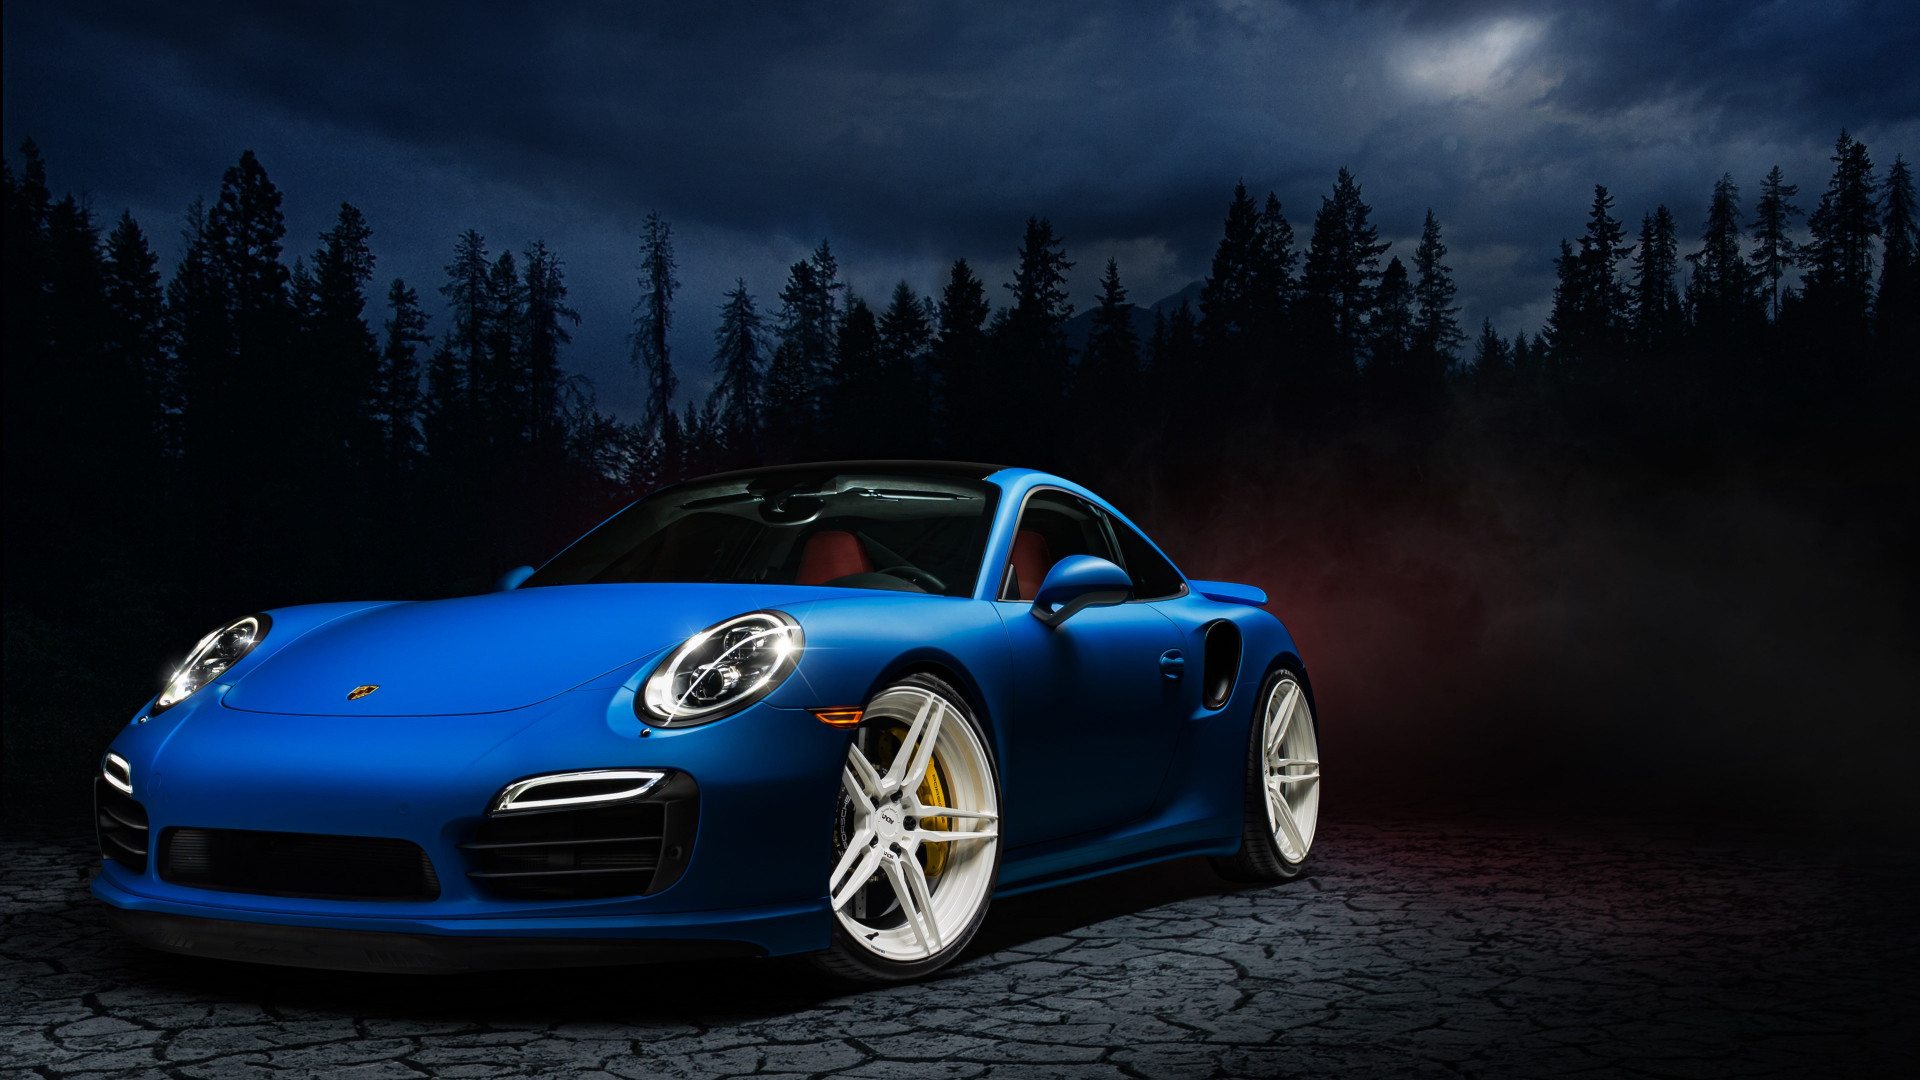 Porsche 911 Blue Wallpaper - Porsche 911 Turbo Wallpaper Iphone - HD Wallpaper 